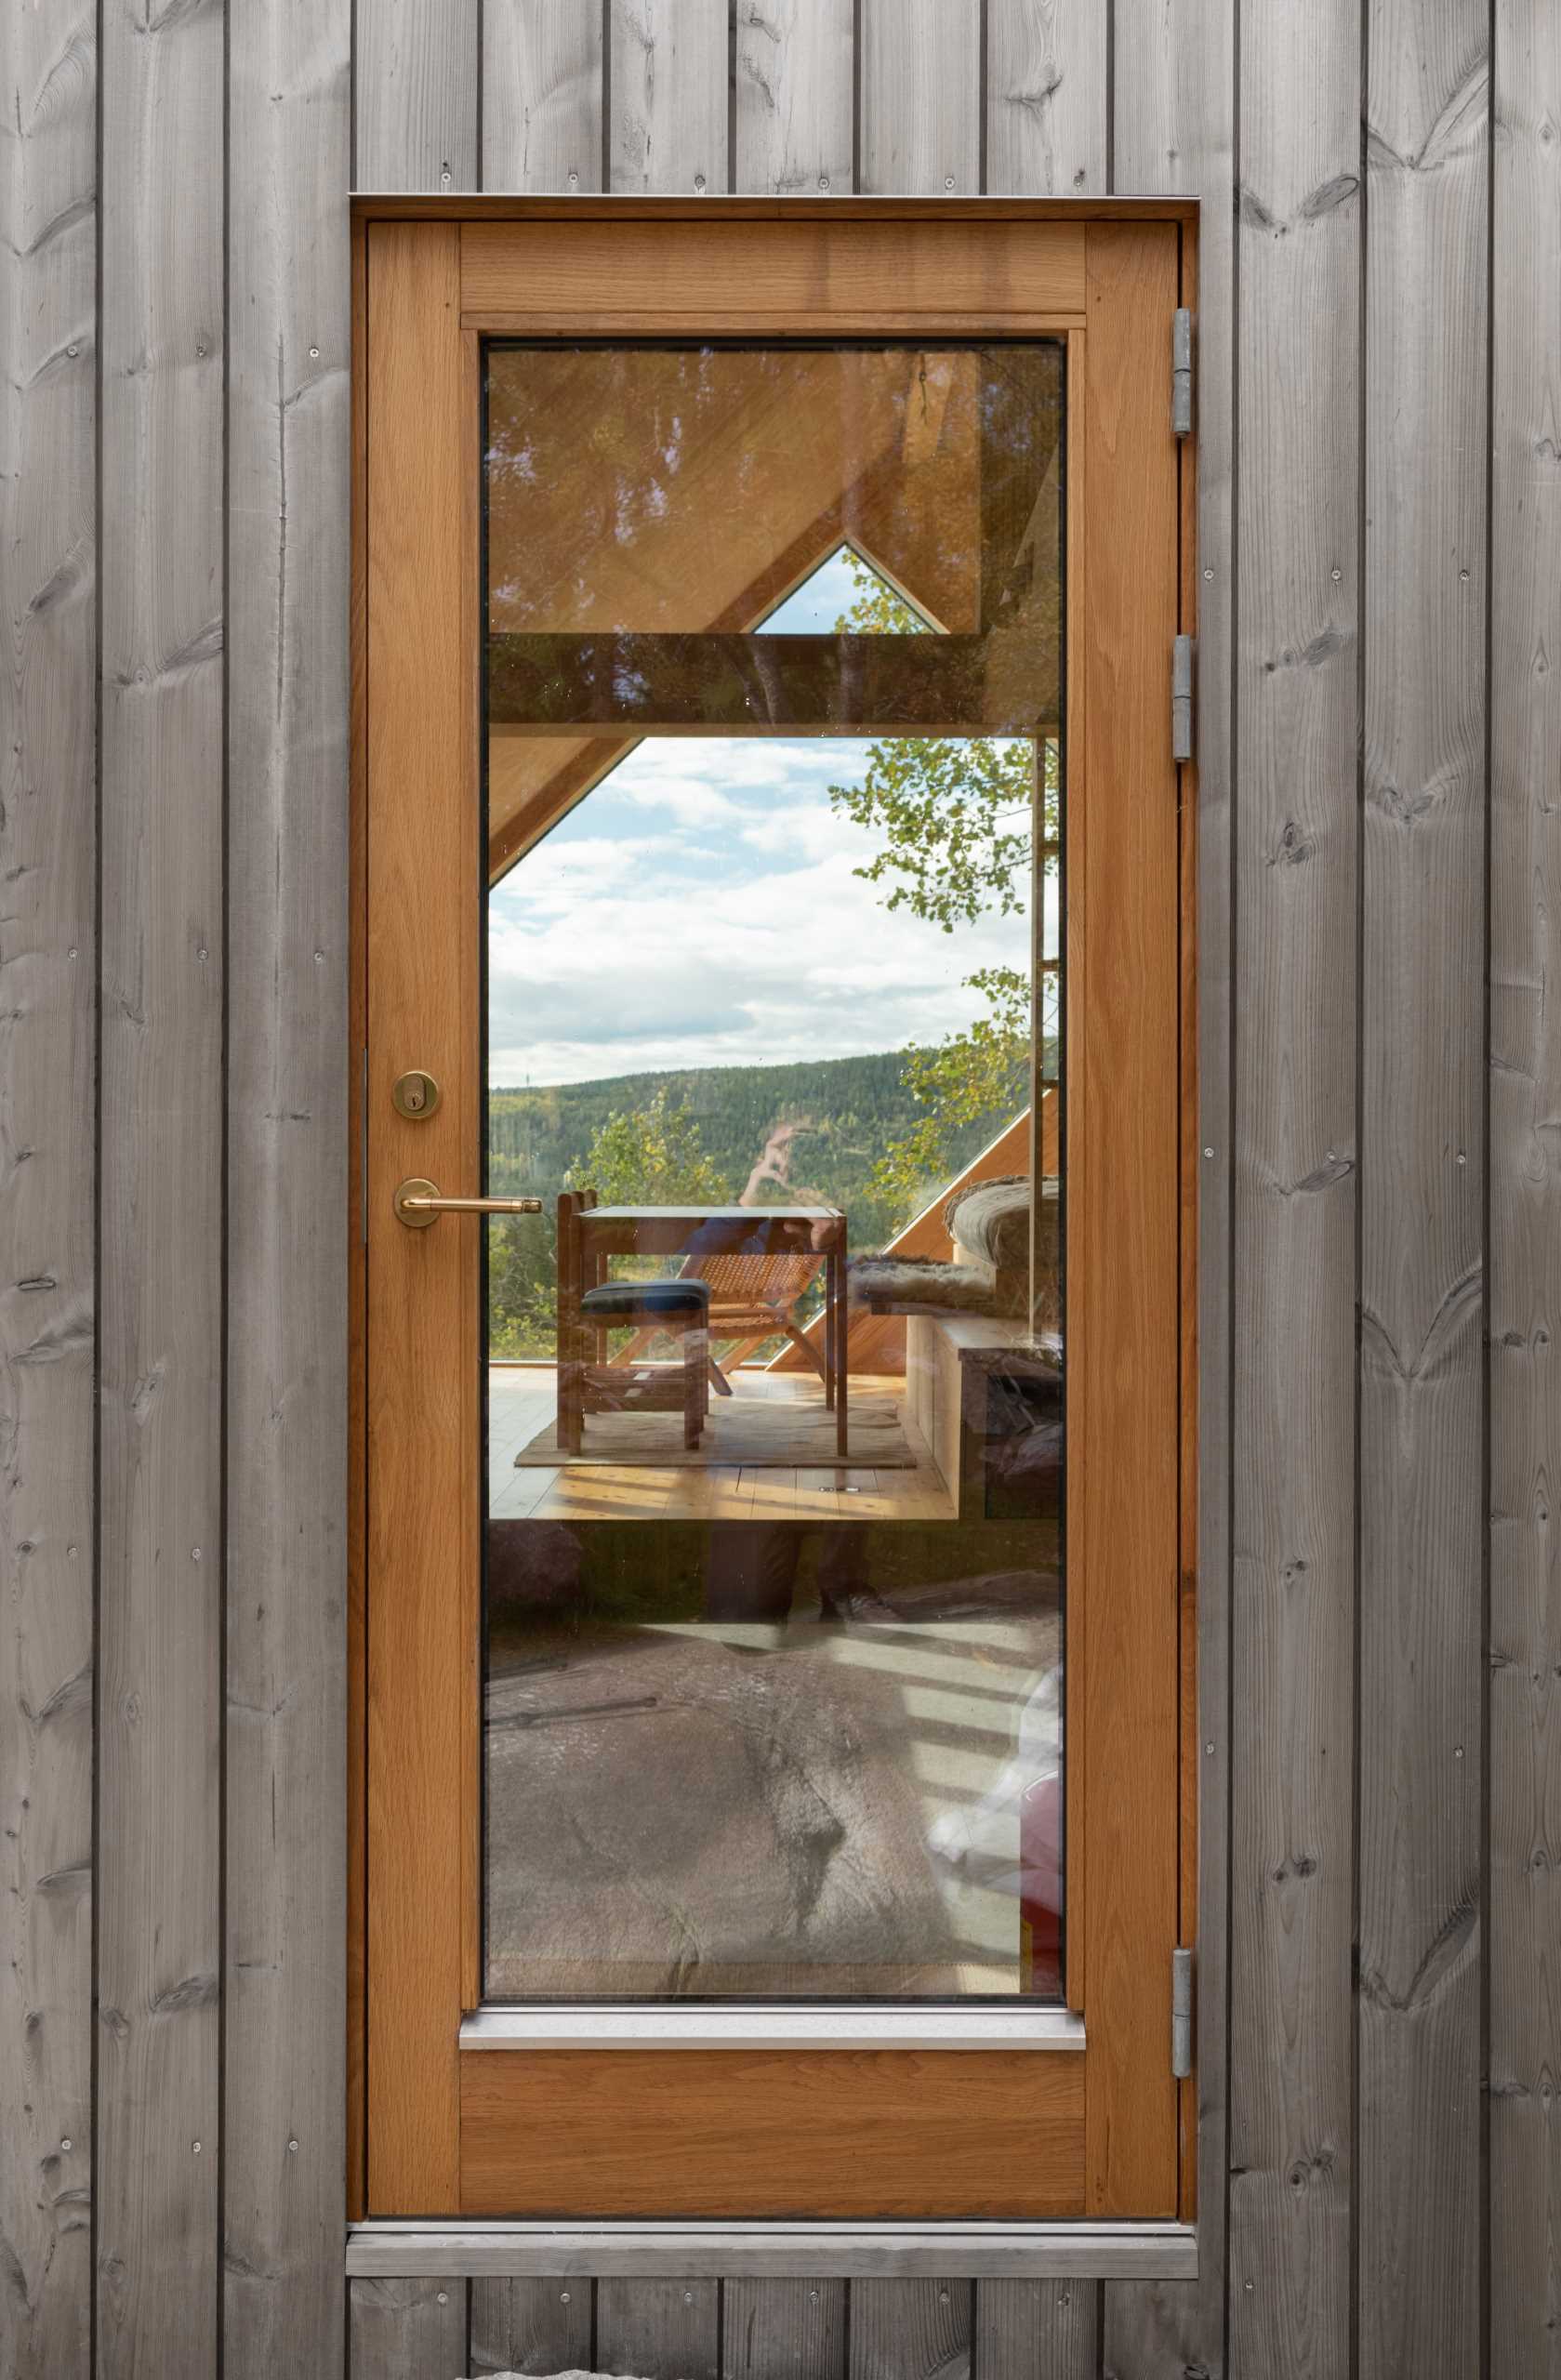 Ușa din sticlă cu rame din lemn a unei cabine contemporane.